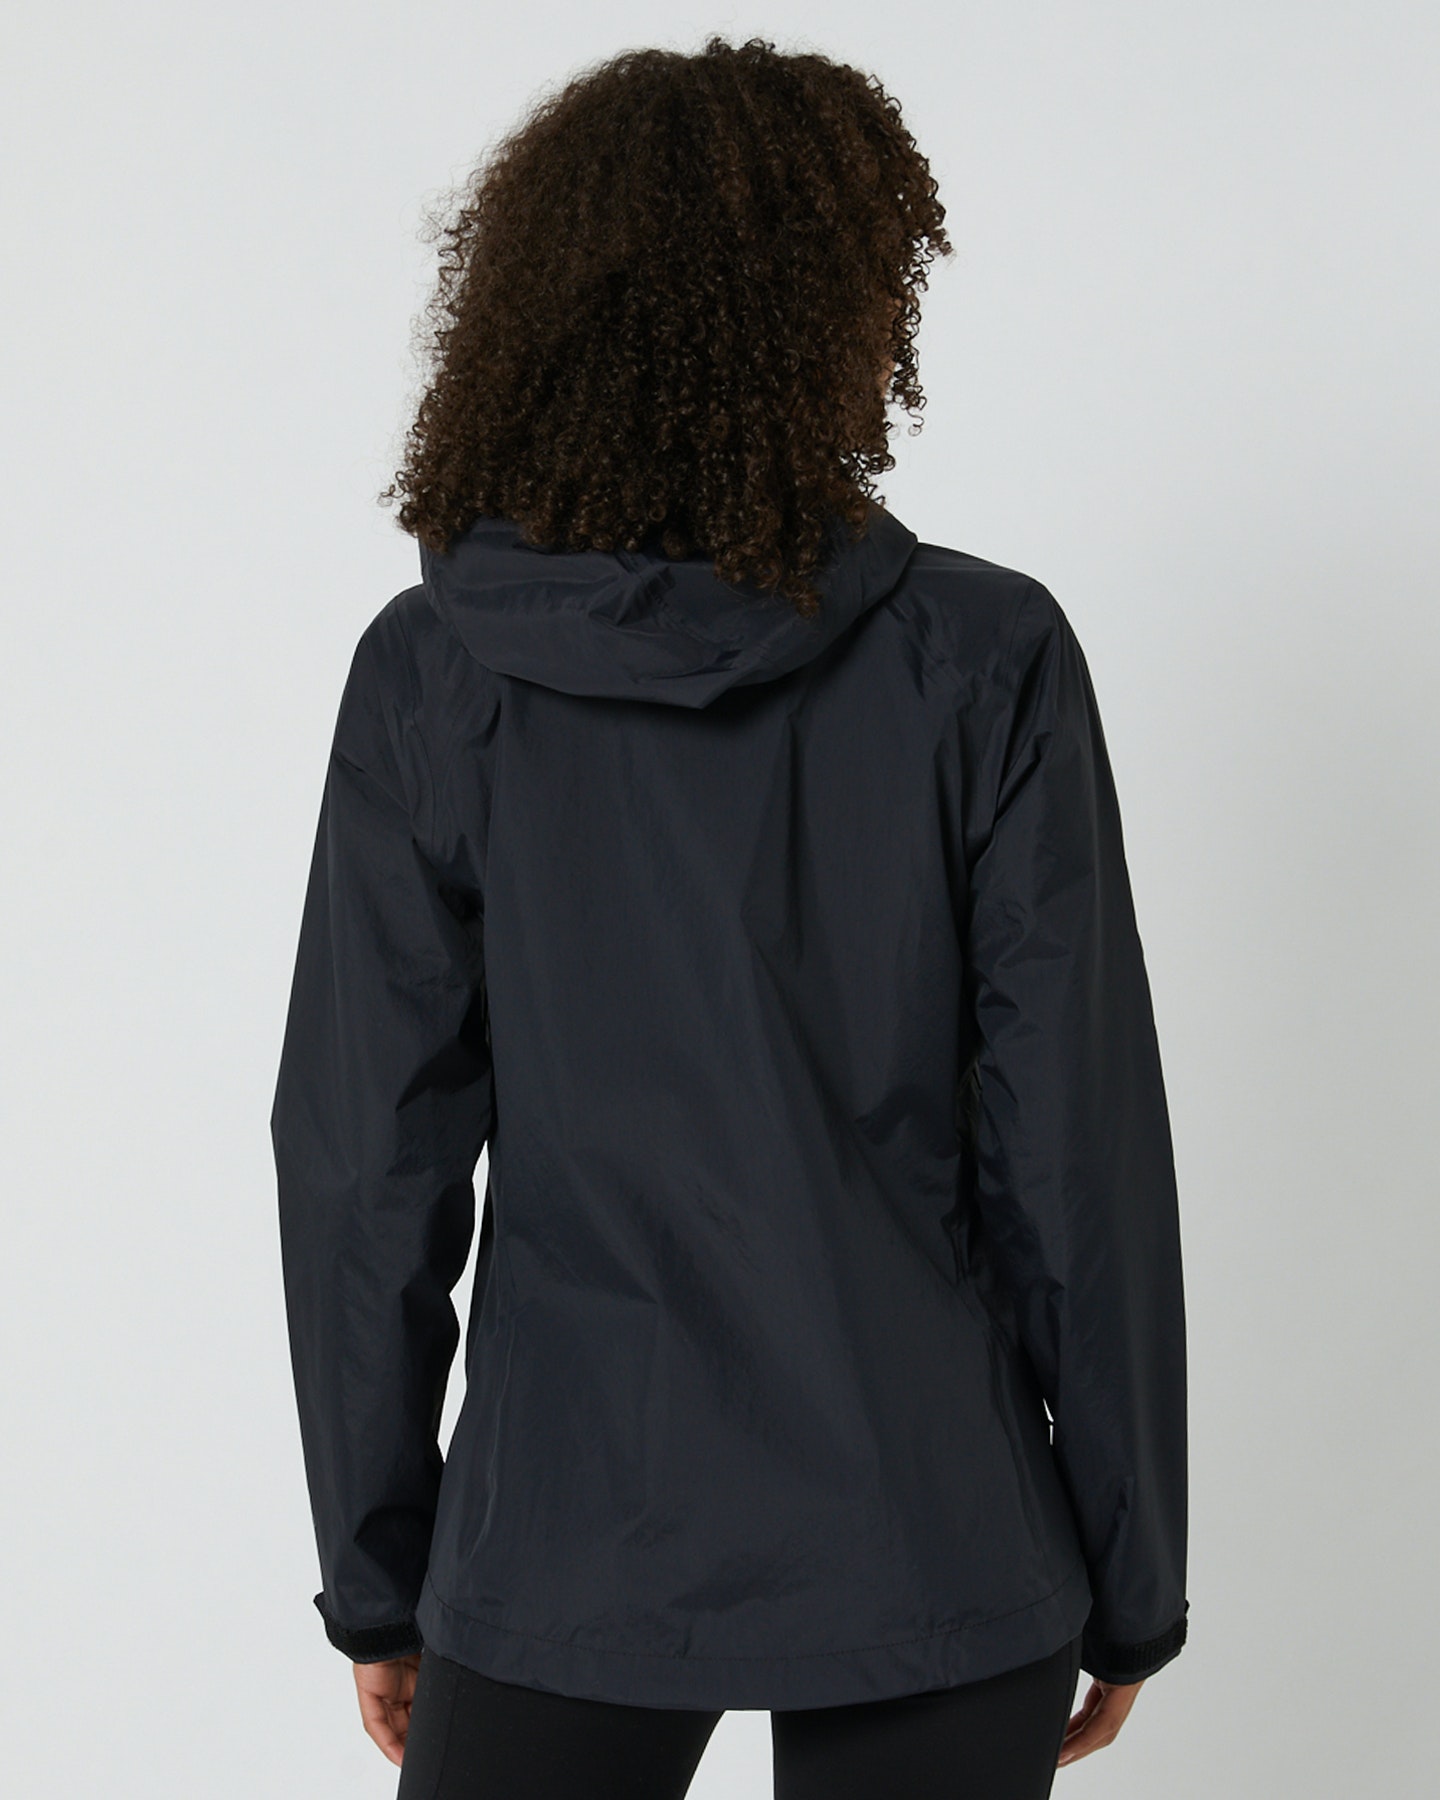 Patagonia Womens Torrentshell 3L Jacket - Black | SurfStitch